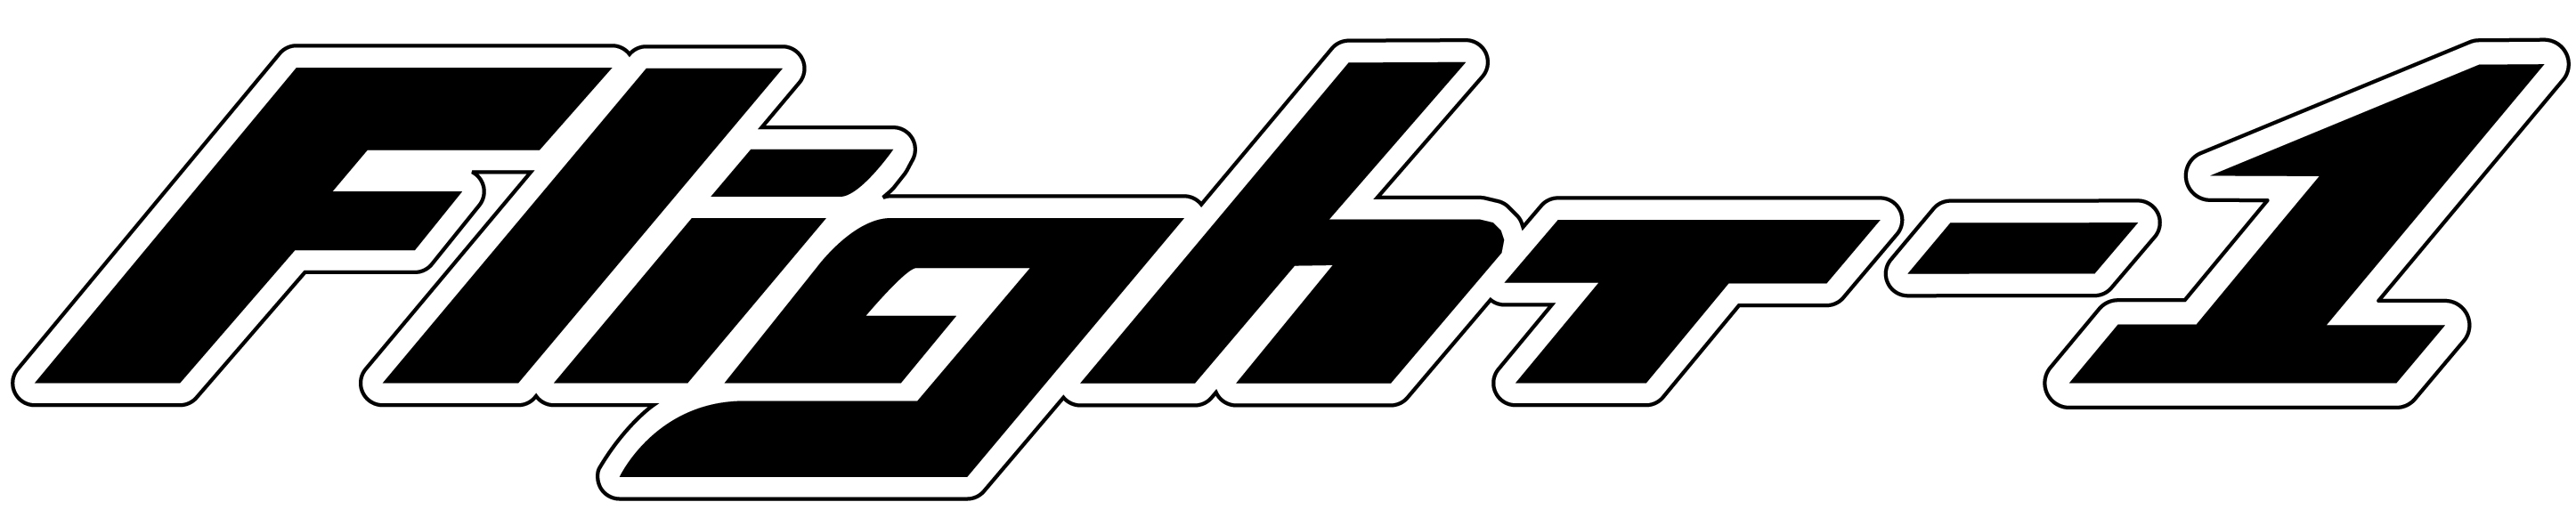 flight1_logo